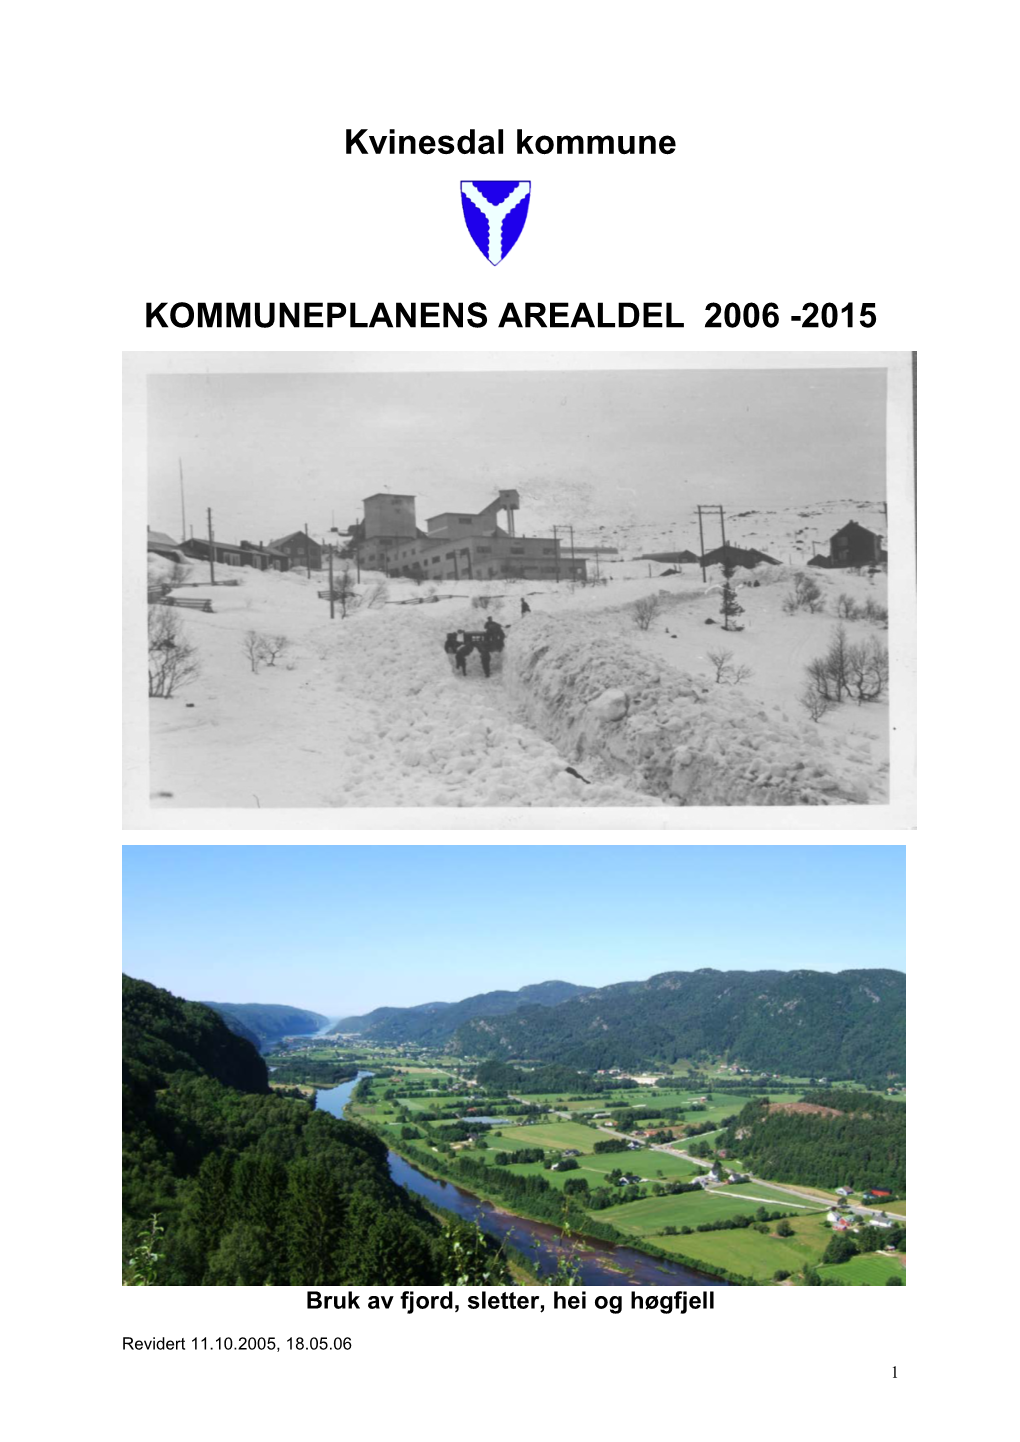 Kvinesdal Kommune KOMMUNEPLANENS AREALDEL 2006 - 2015